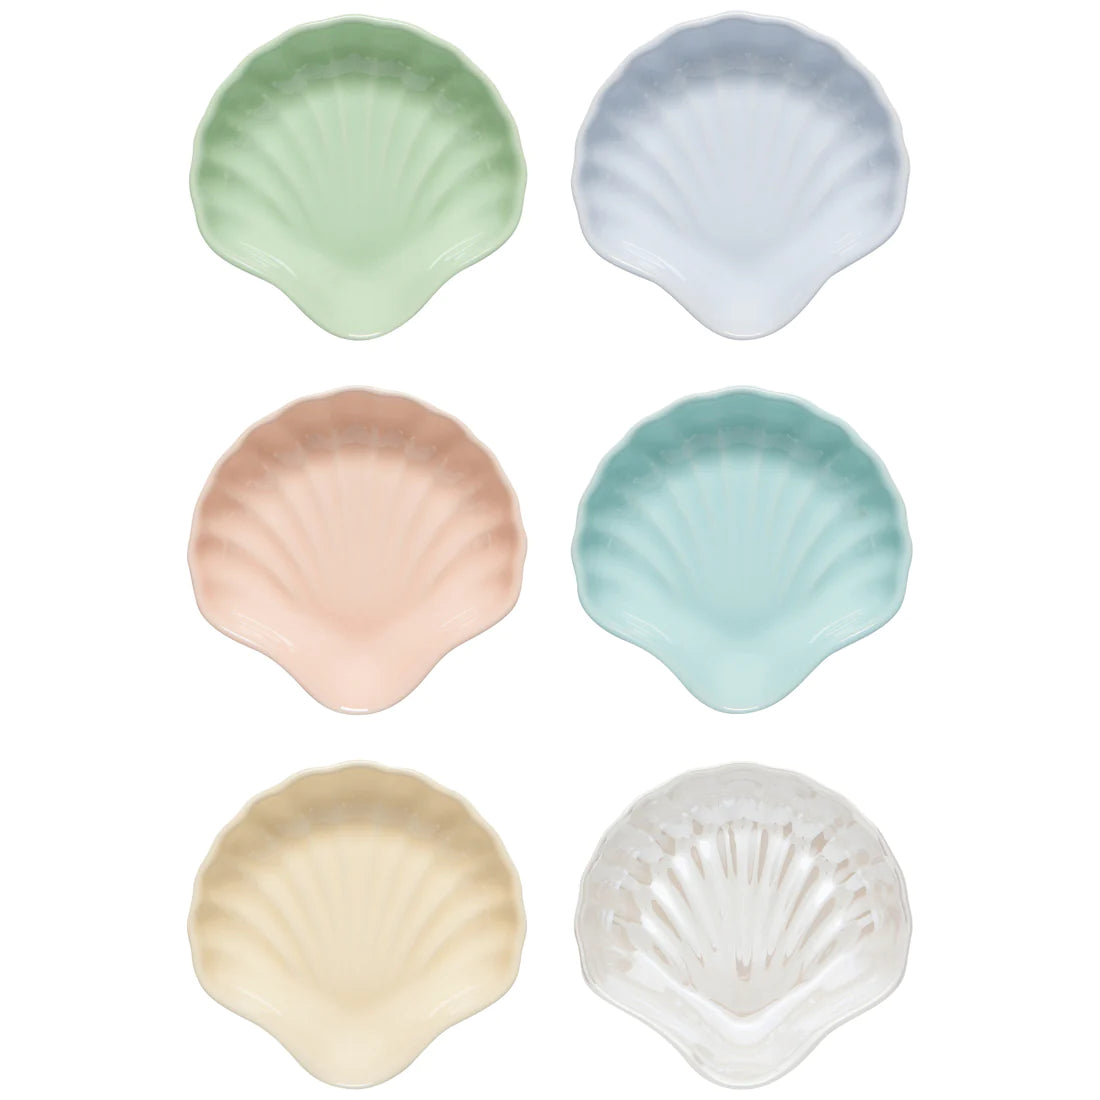 Seaside Shells Pinch Bowl Set of 6